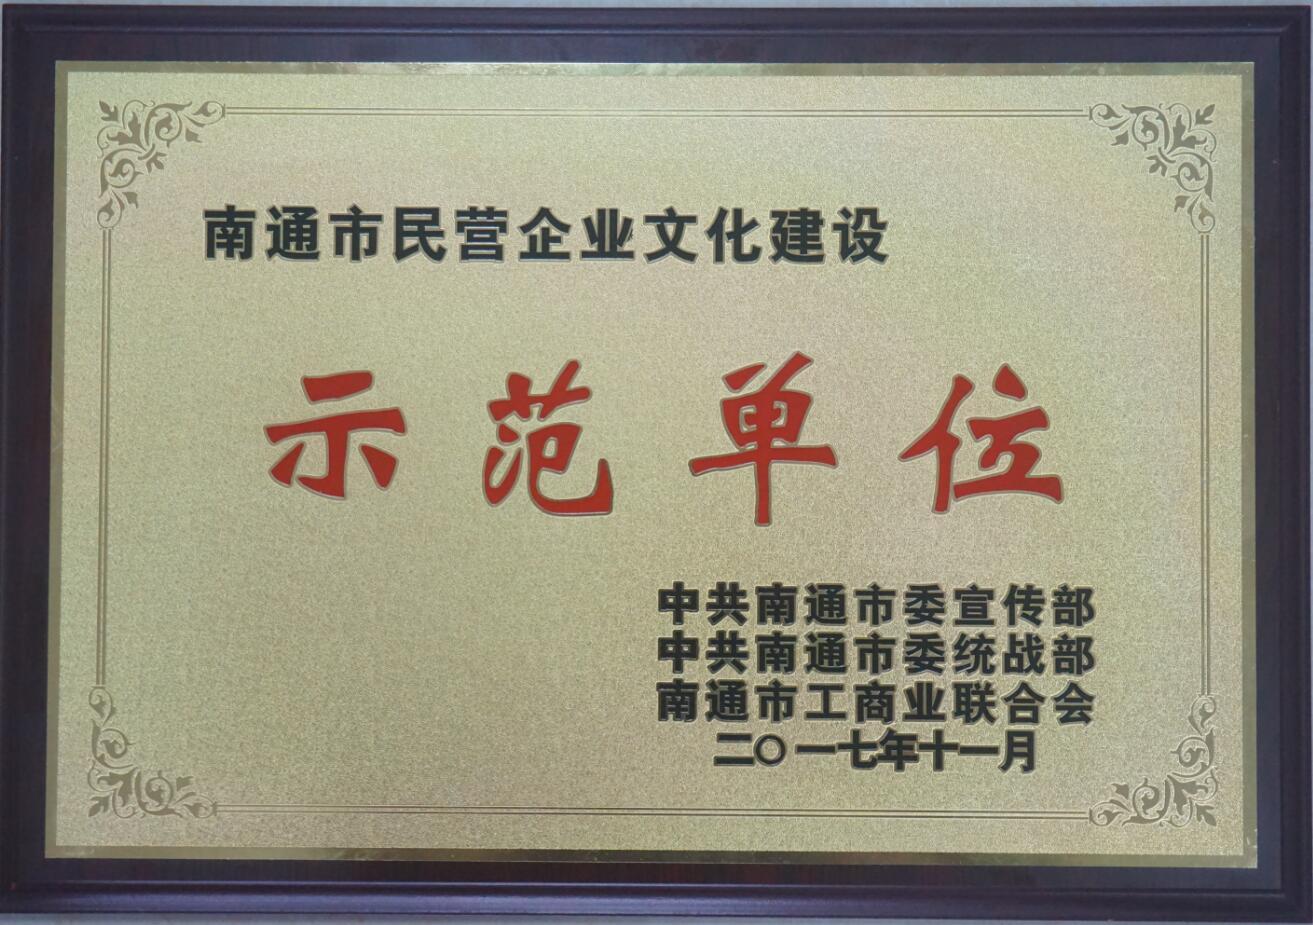 公司荣获“南通市民营企业文化建设示范单位” 称号